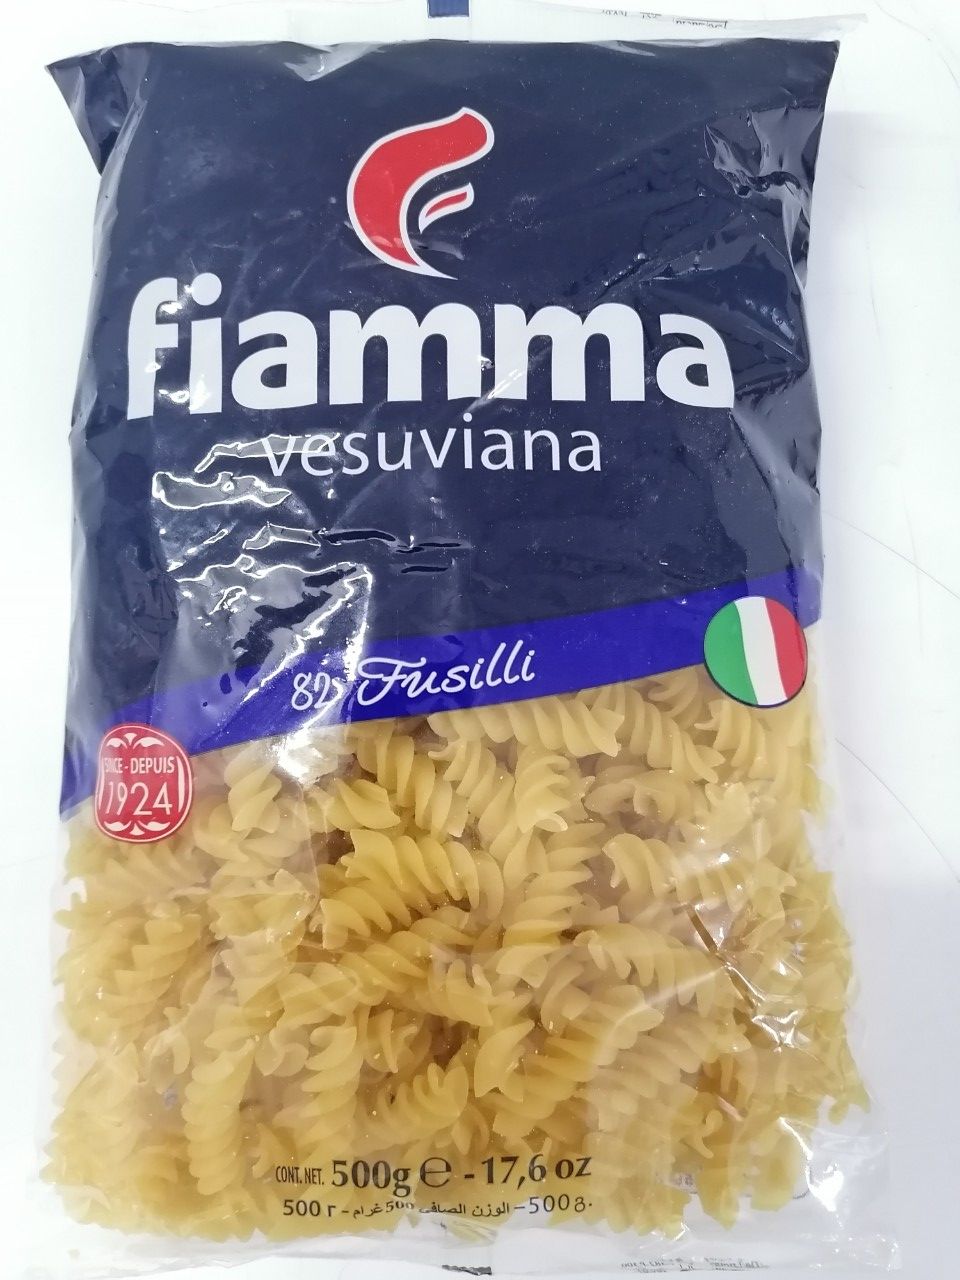 500g - No.82 Fusilli NUI XOẮN Italia FIAMMA Pasta halal atu-hk